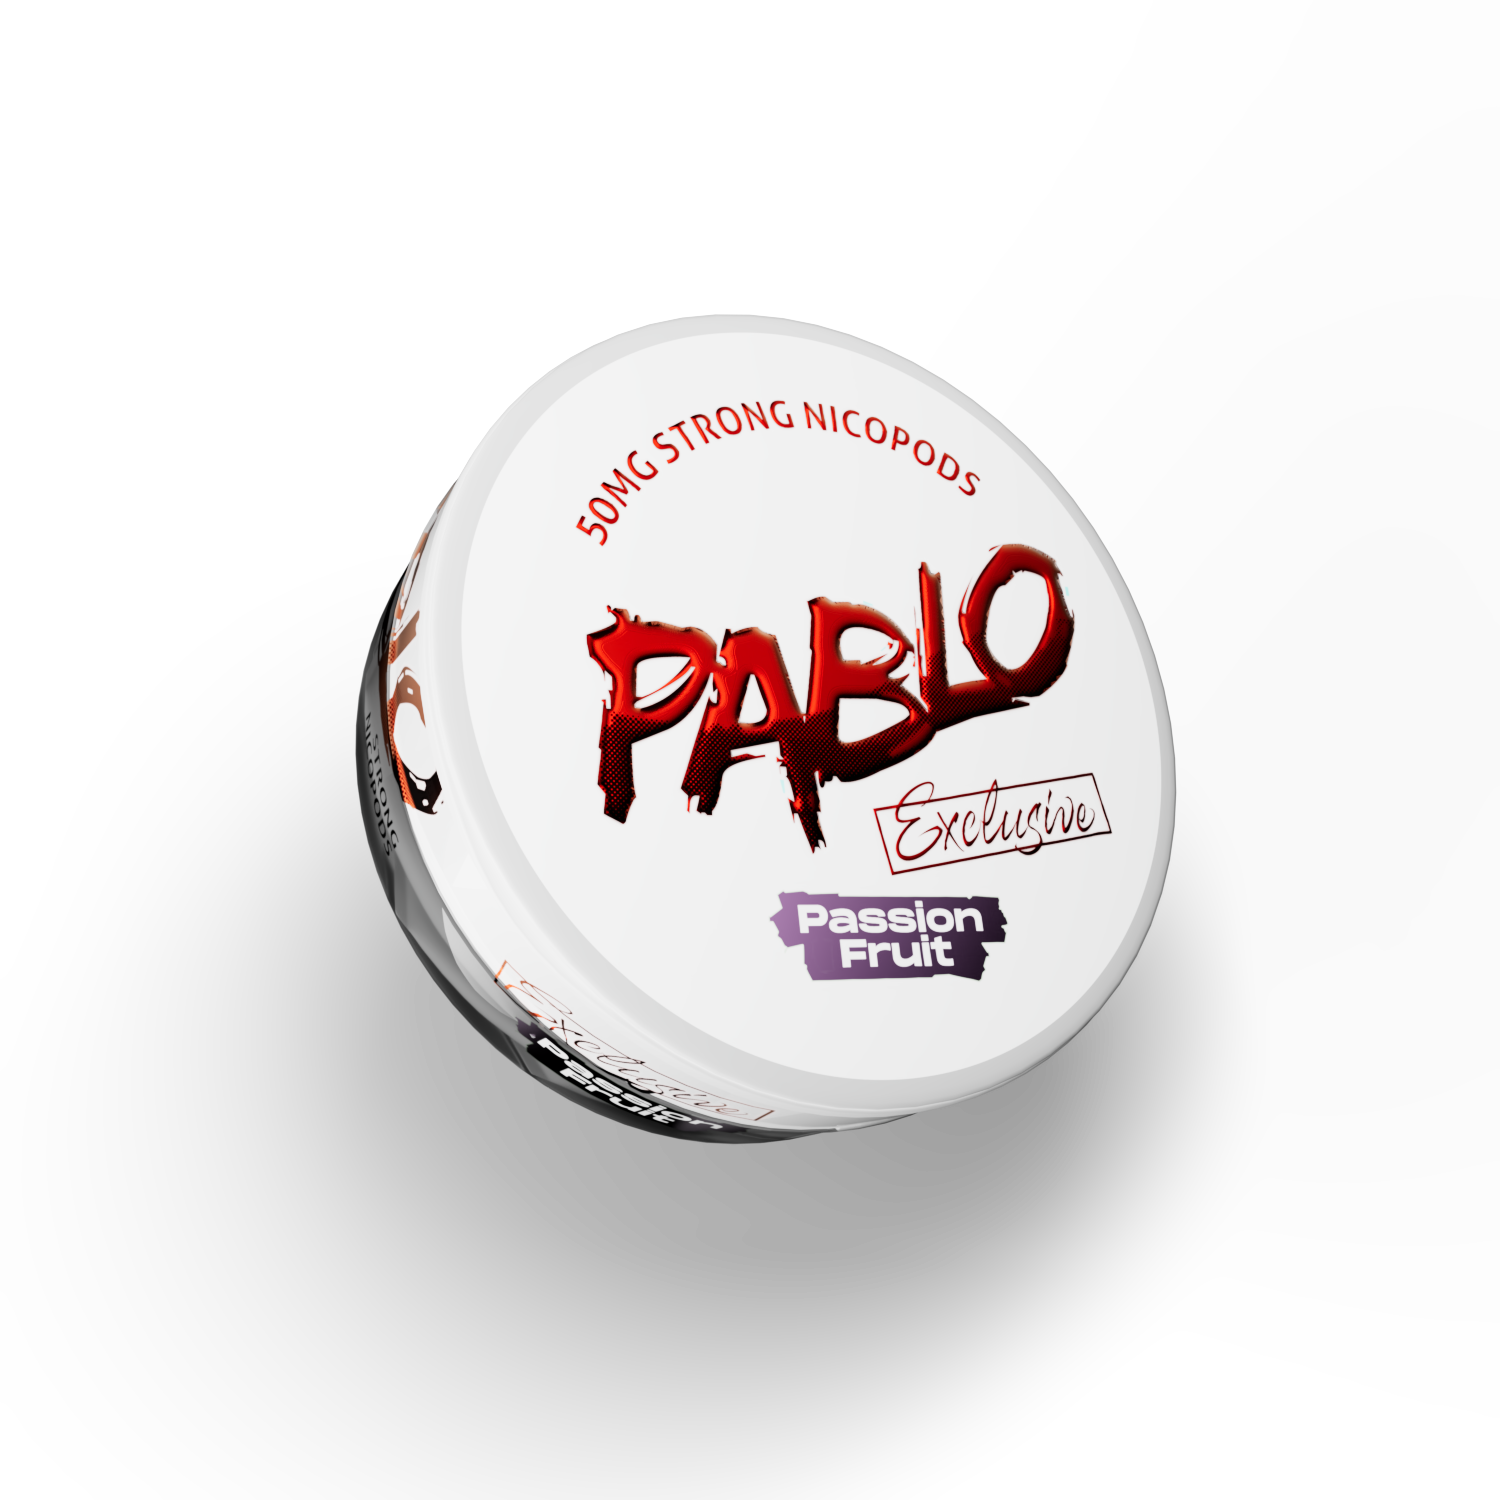 PABLO EXCLUSIVE PASSION FRUIT